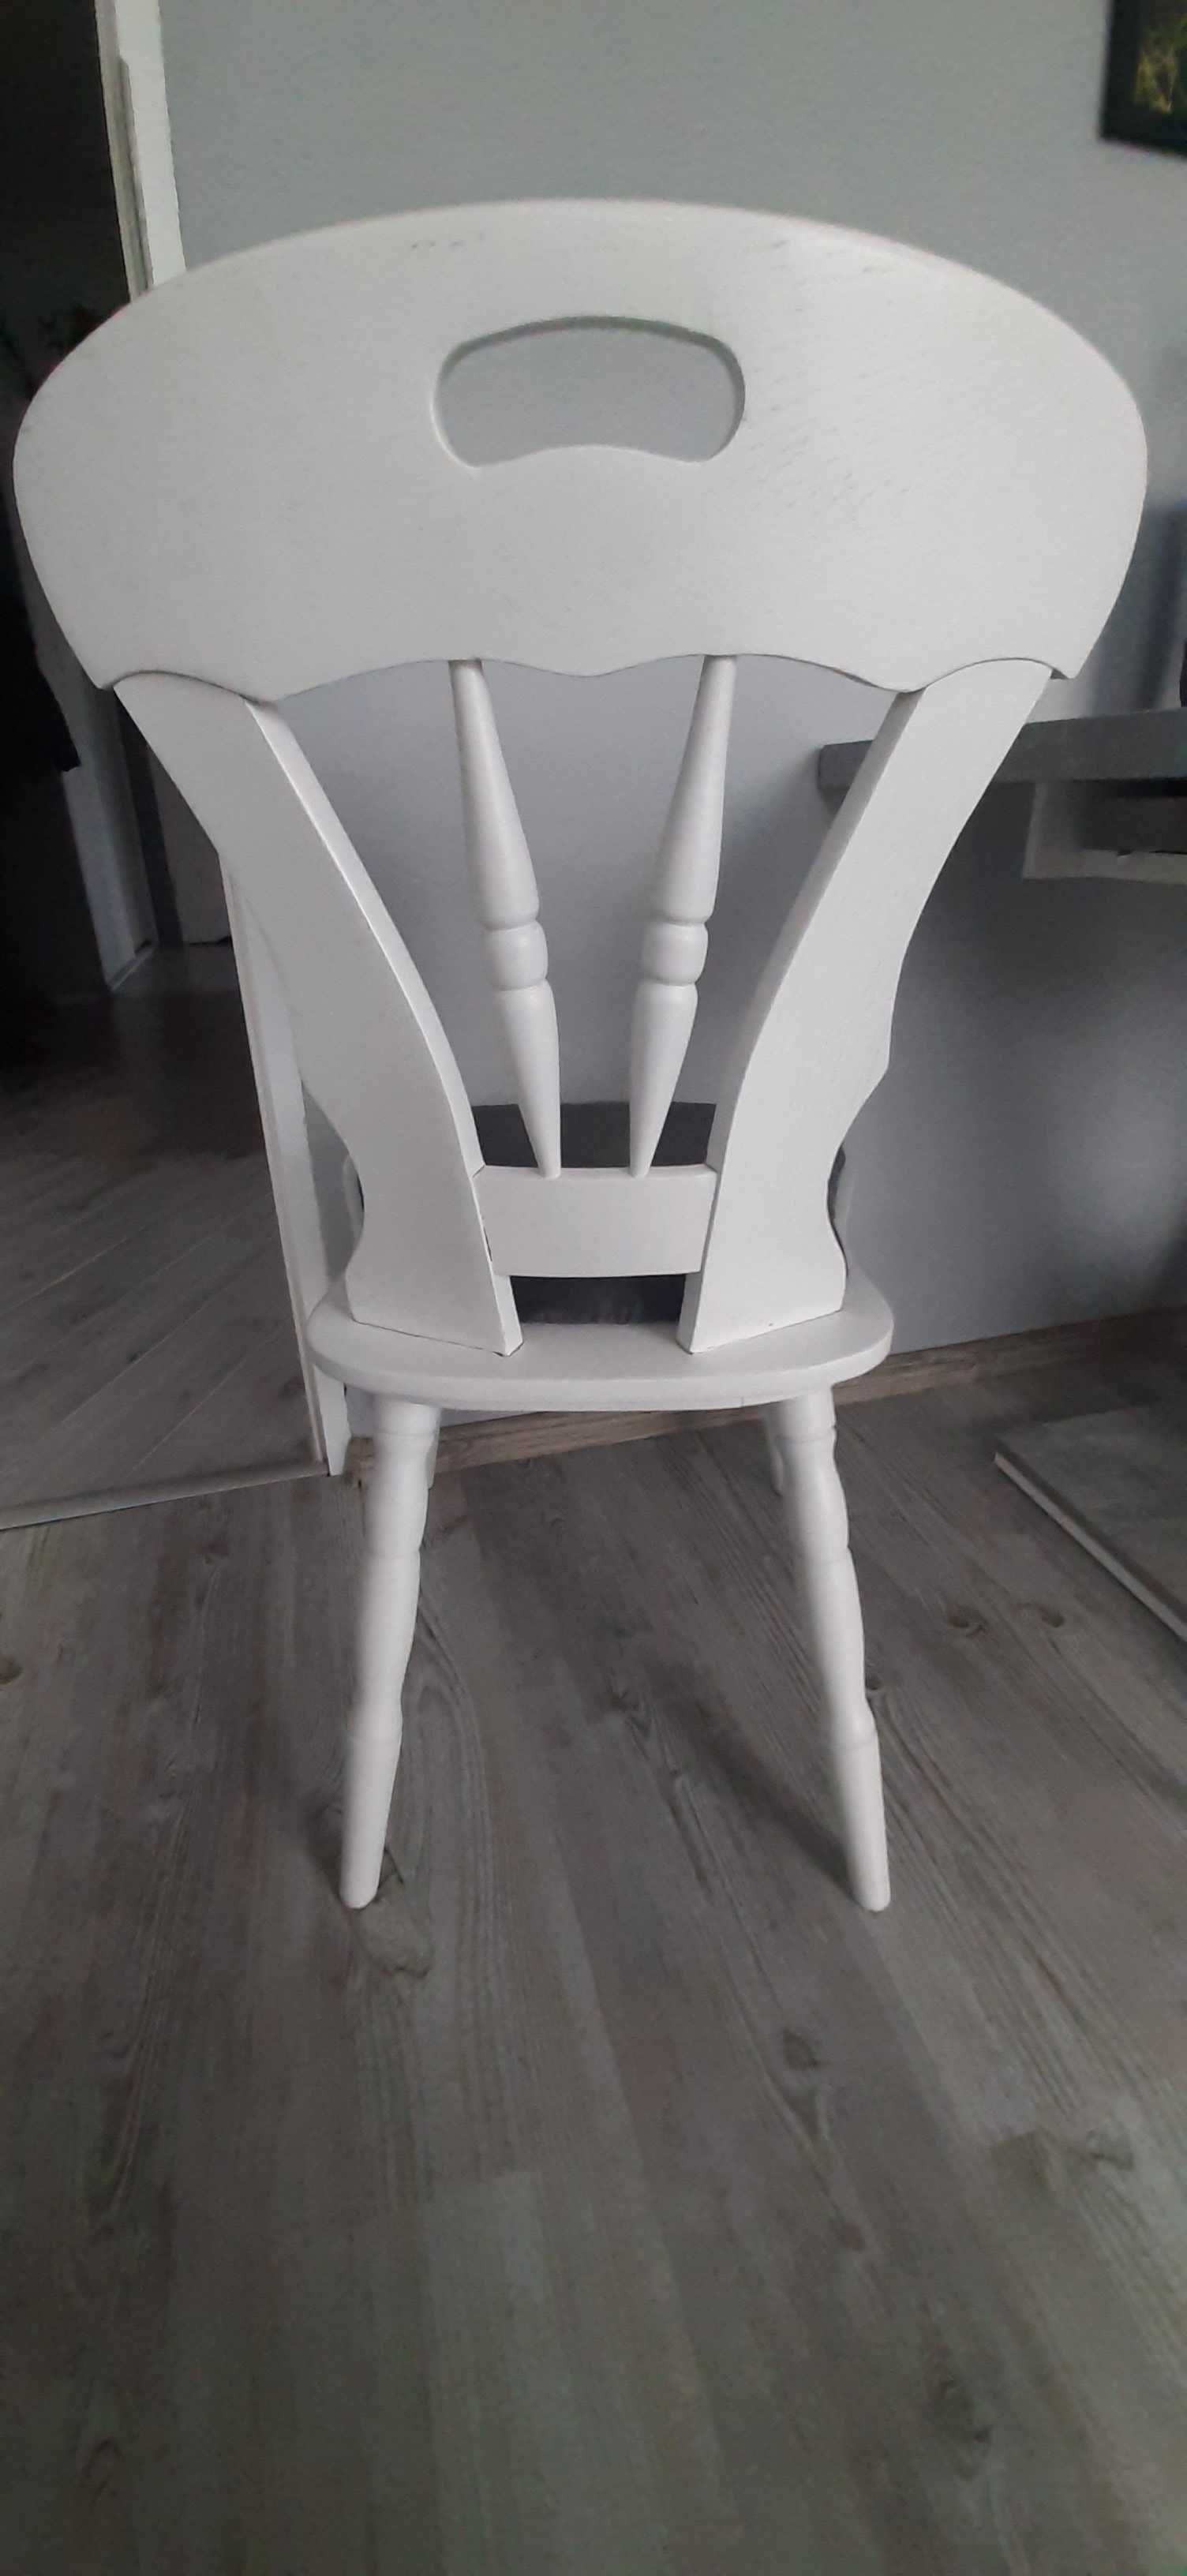 Krzeslo (krzesla) dębowe po renowacji